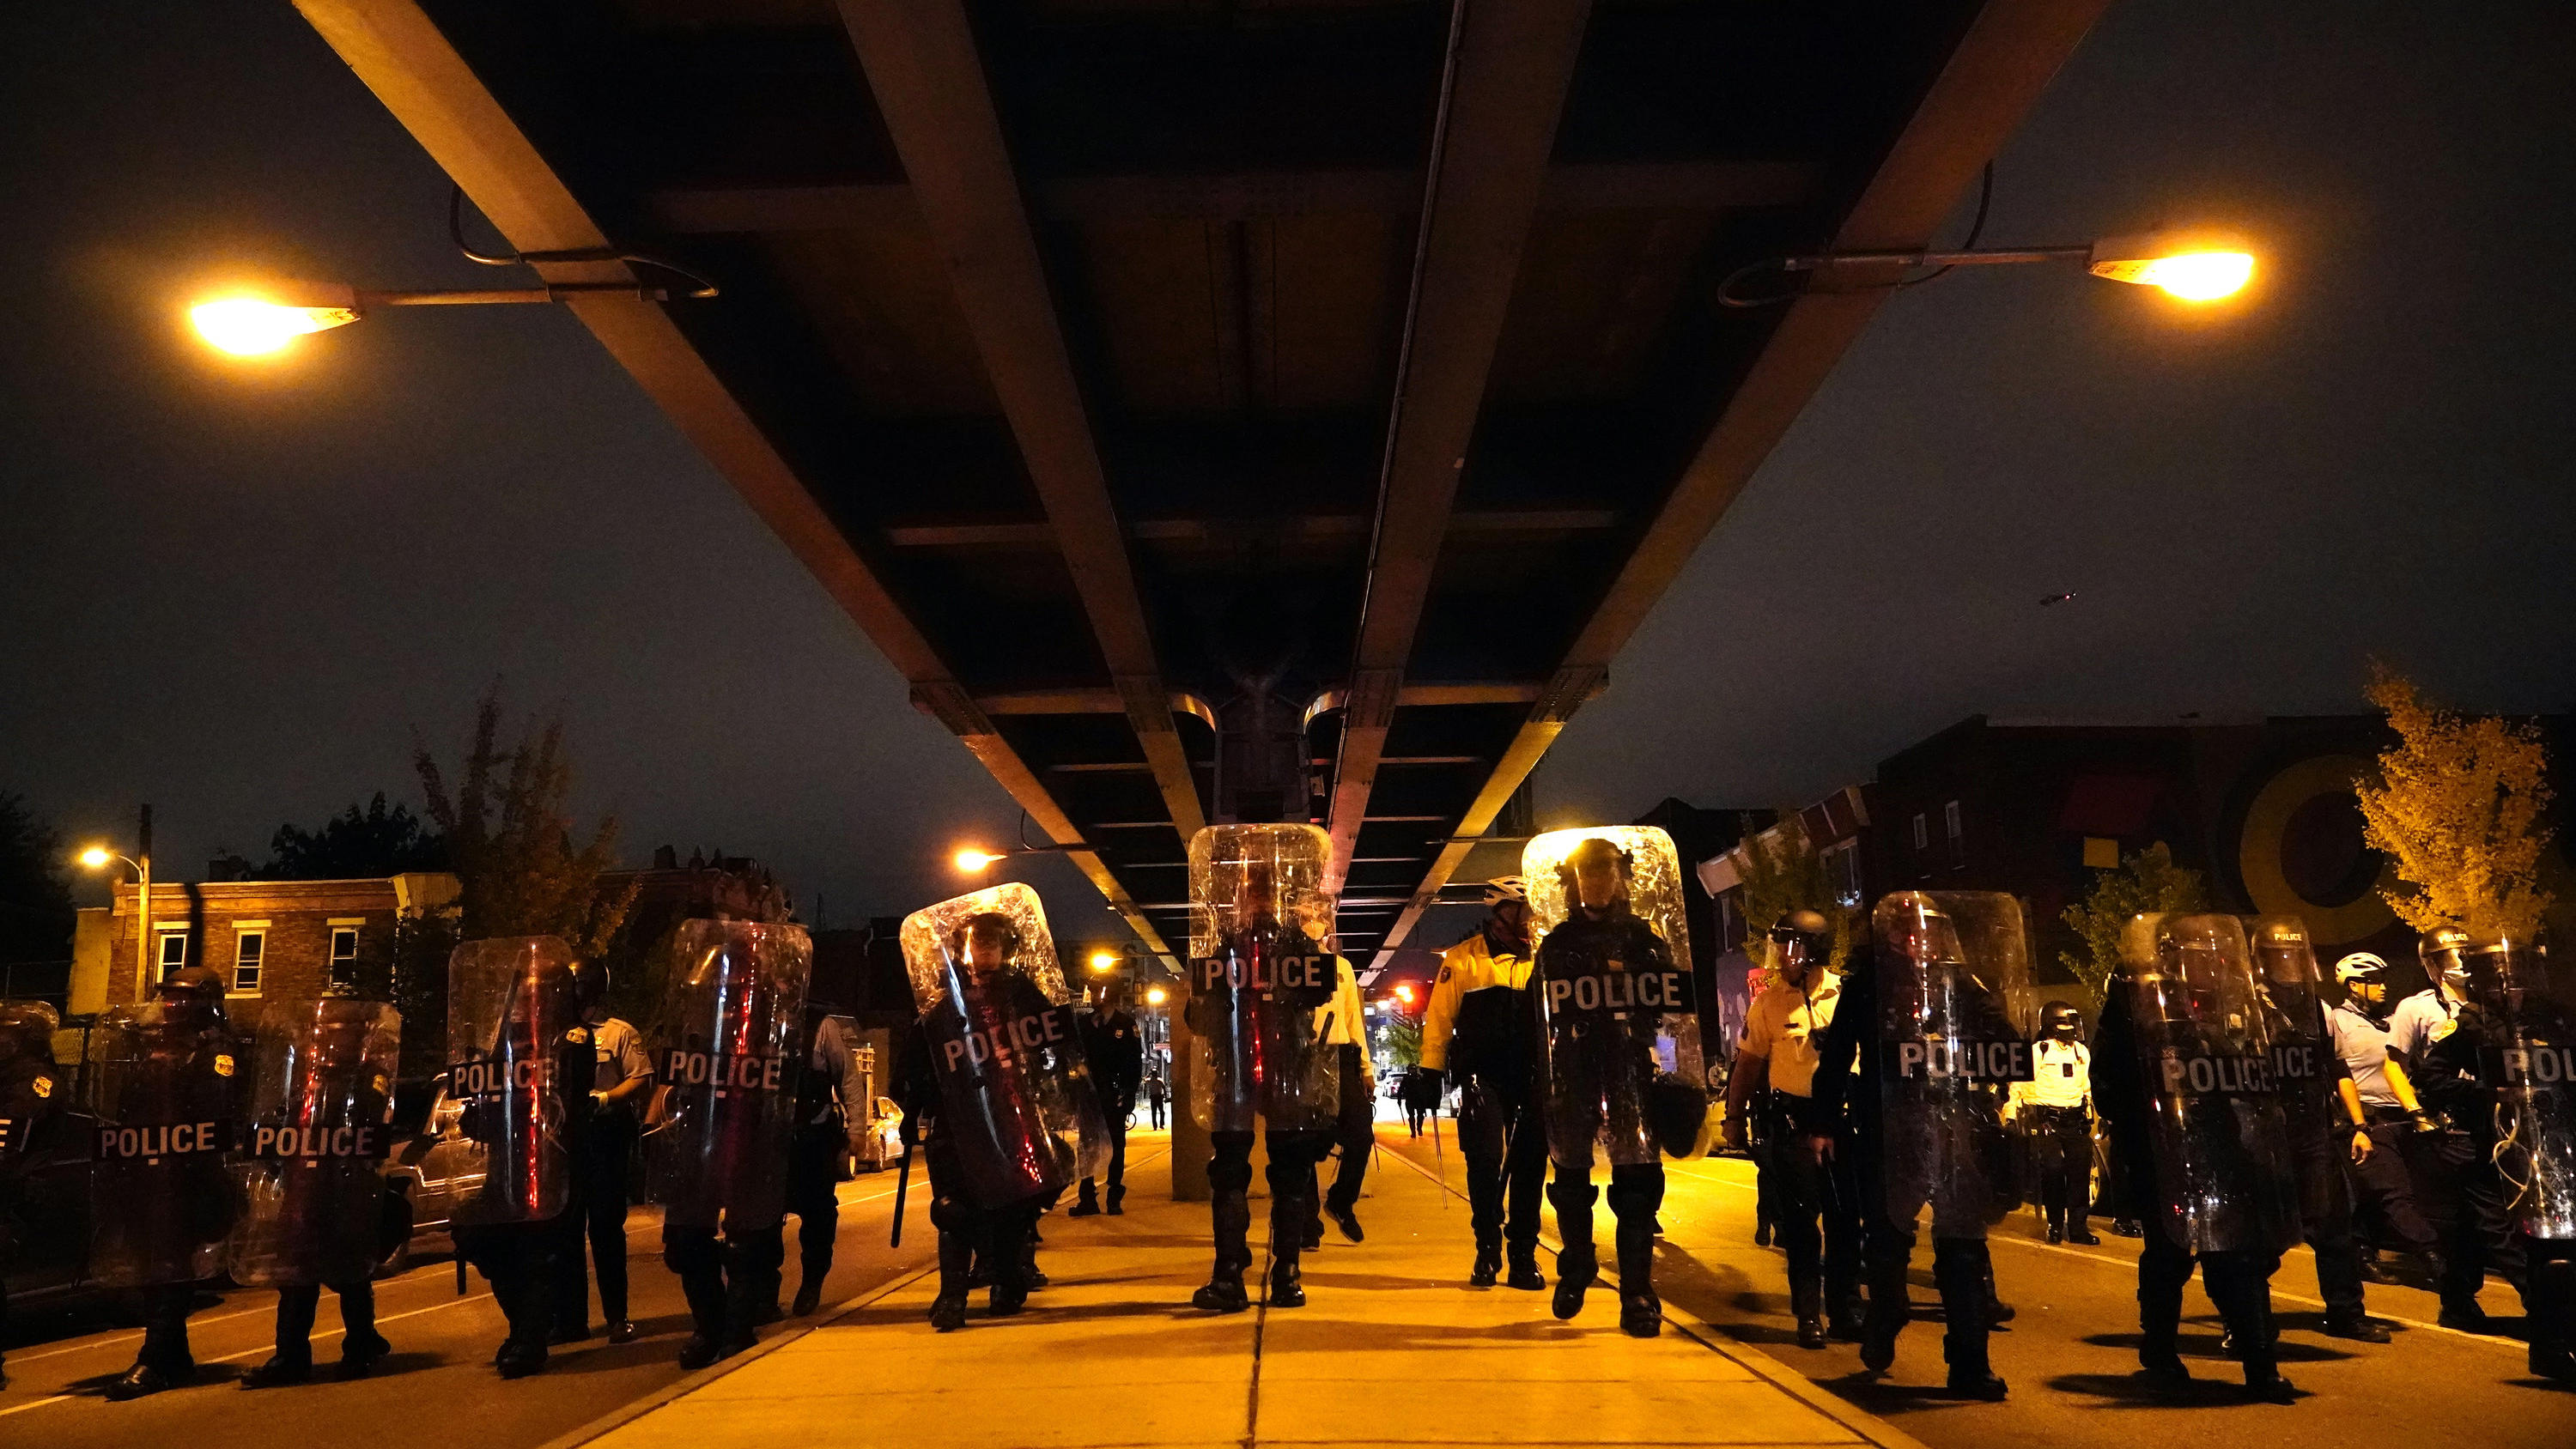 28.10.2020, USA, Philadelphia: Polizisten bilden während einer Demonstration gegen Polizeigewalt nach dem Tod eines Schwarzen durch Polizeischüsse eine Kette. Polizisten in der Stadt Philadelphia im US-Bundesstaat Pennsylvania hatten am 26. Oktober d